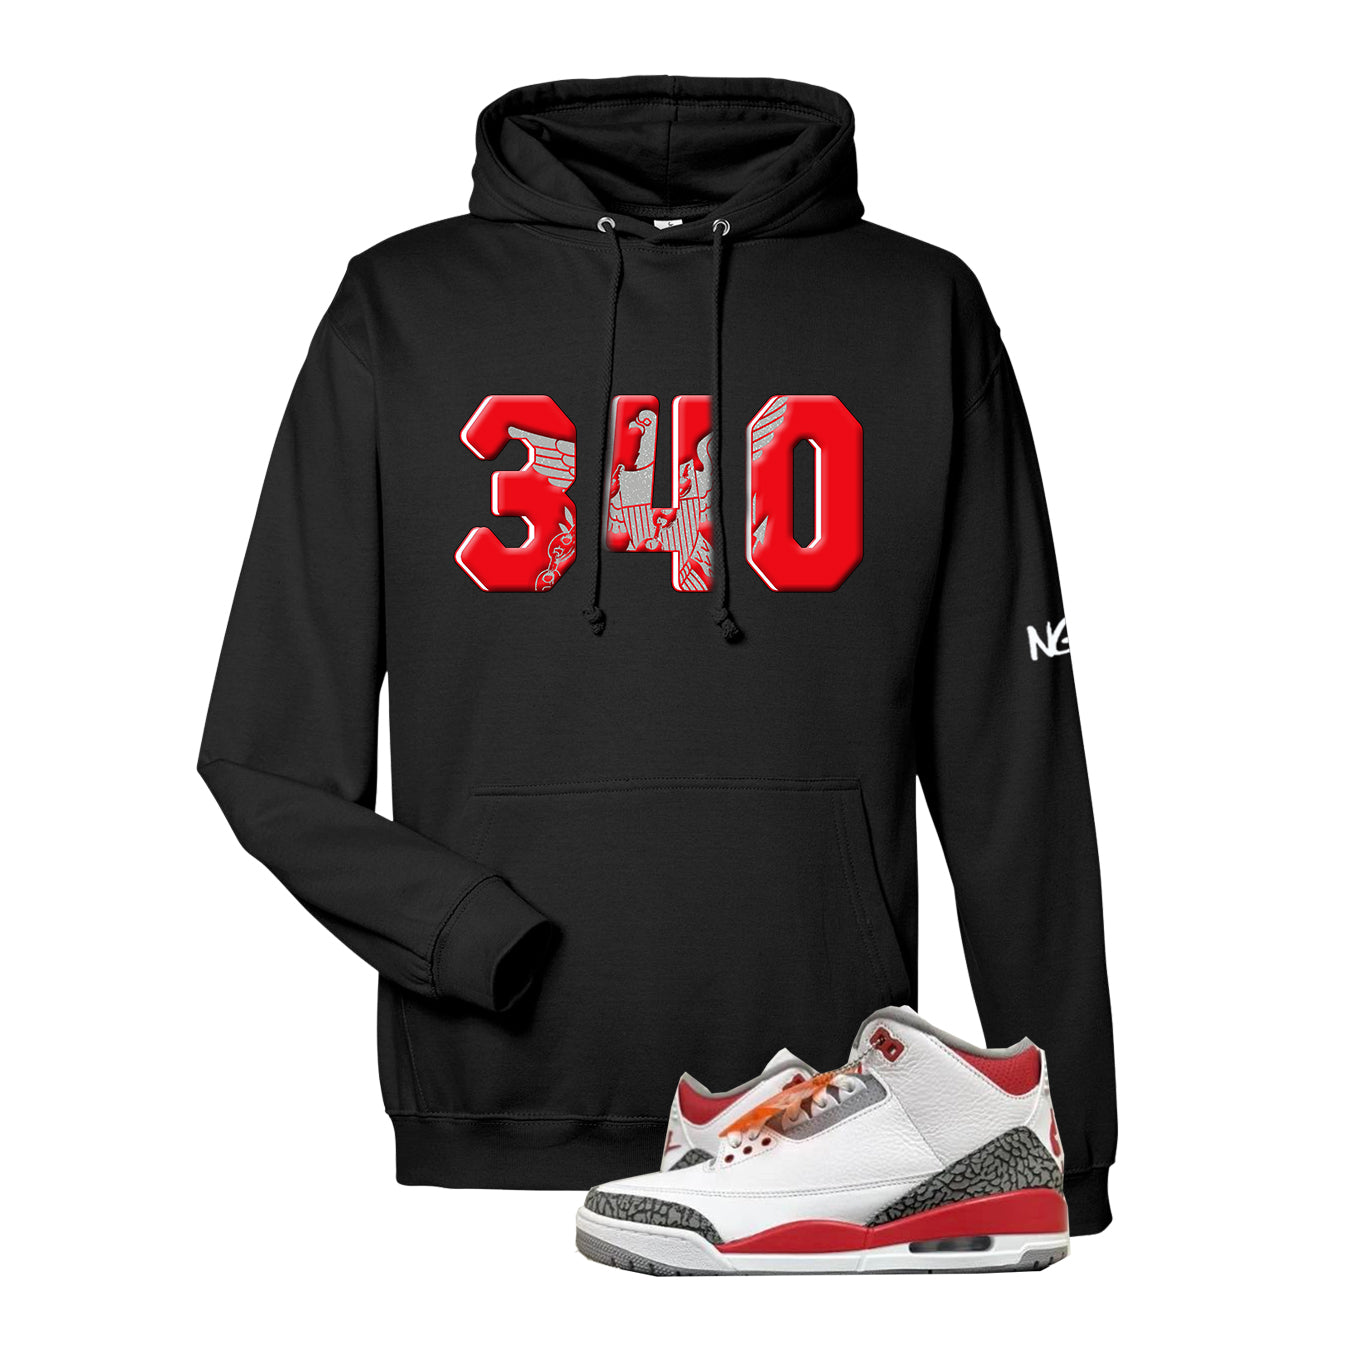 340 Sneaker Shirt (Fire Red)